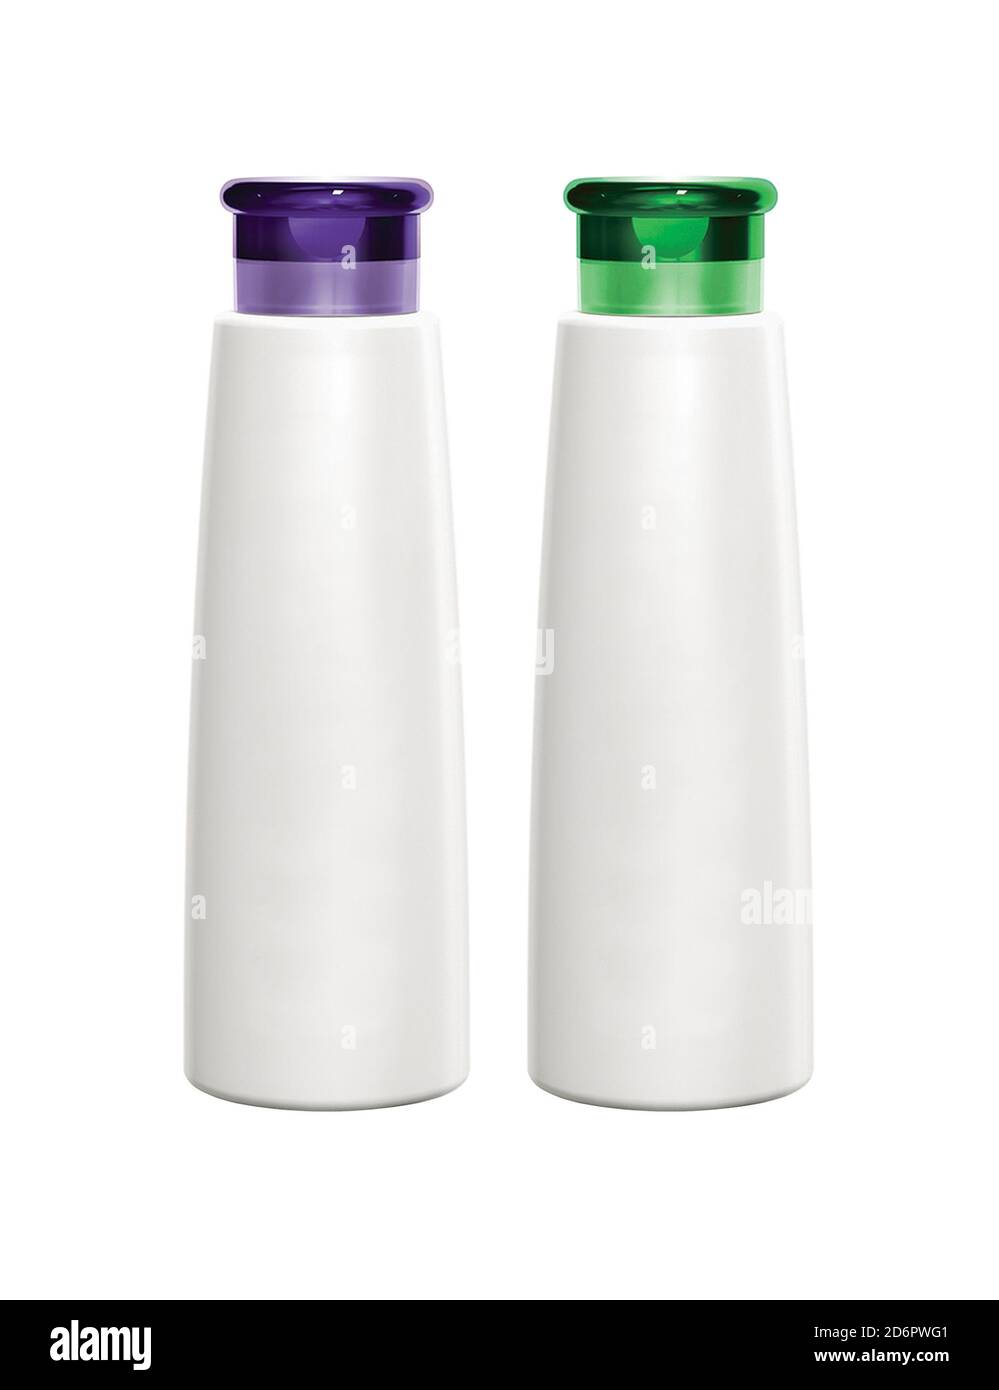 https://c8.alamy.com/compes/2d6pwg1/dos-envases-de-plastico-para-botellas-de-champu-o-gel-de-ducha-2d6pwg1.jpg